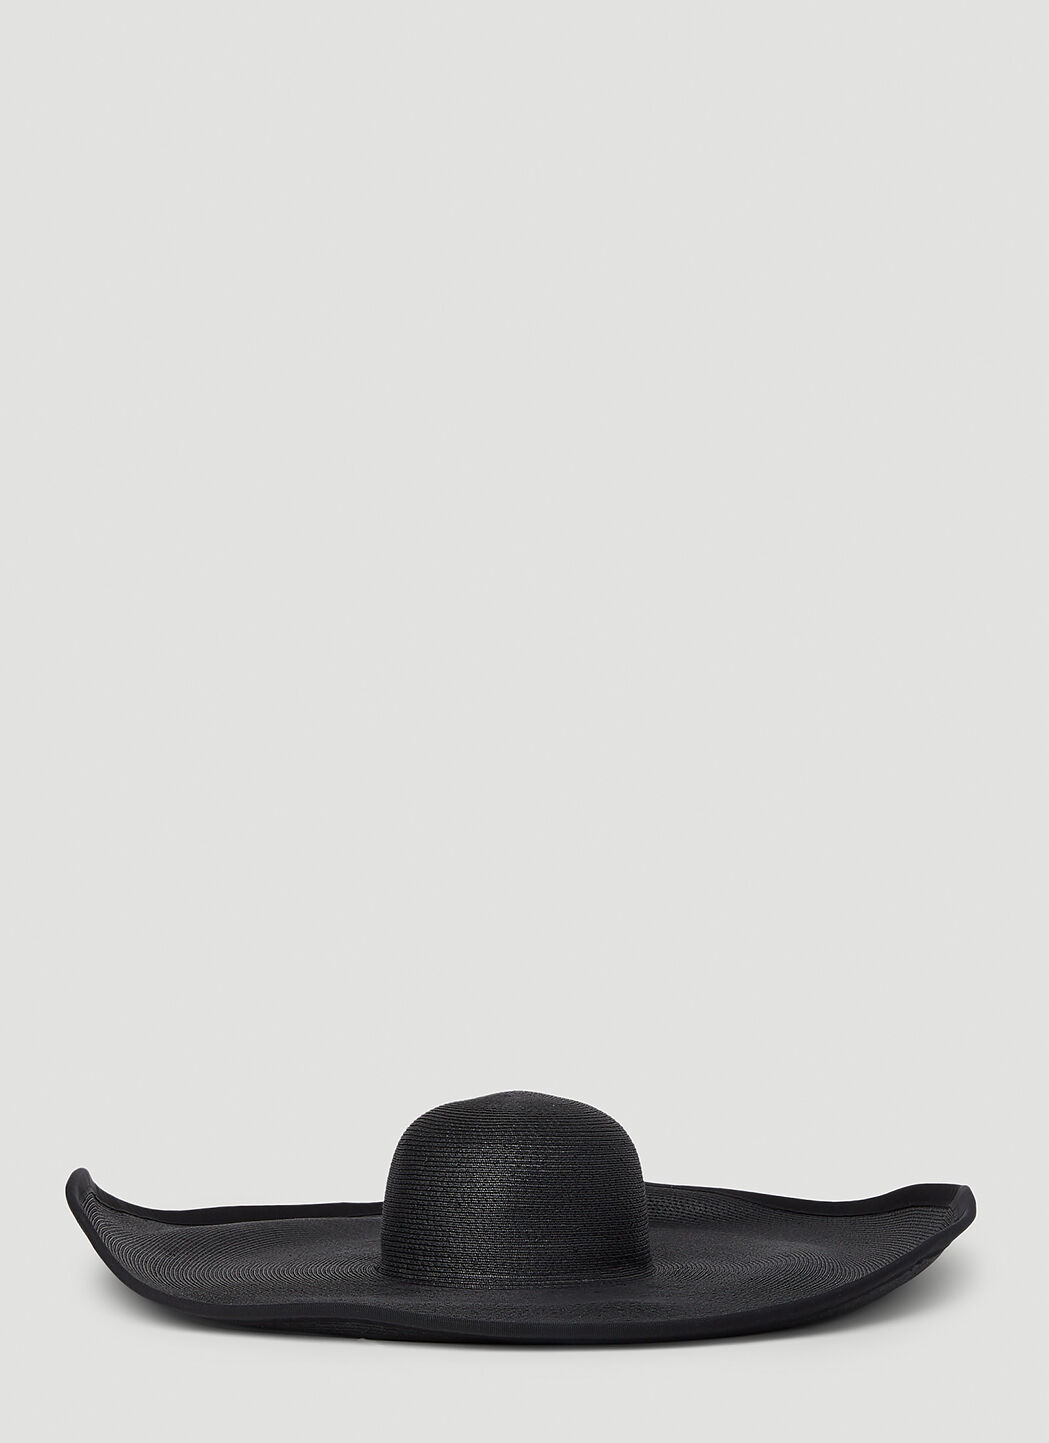 Burberry Oversized Hat Beige bur0353006